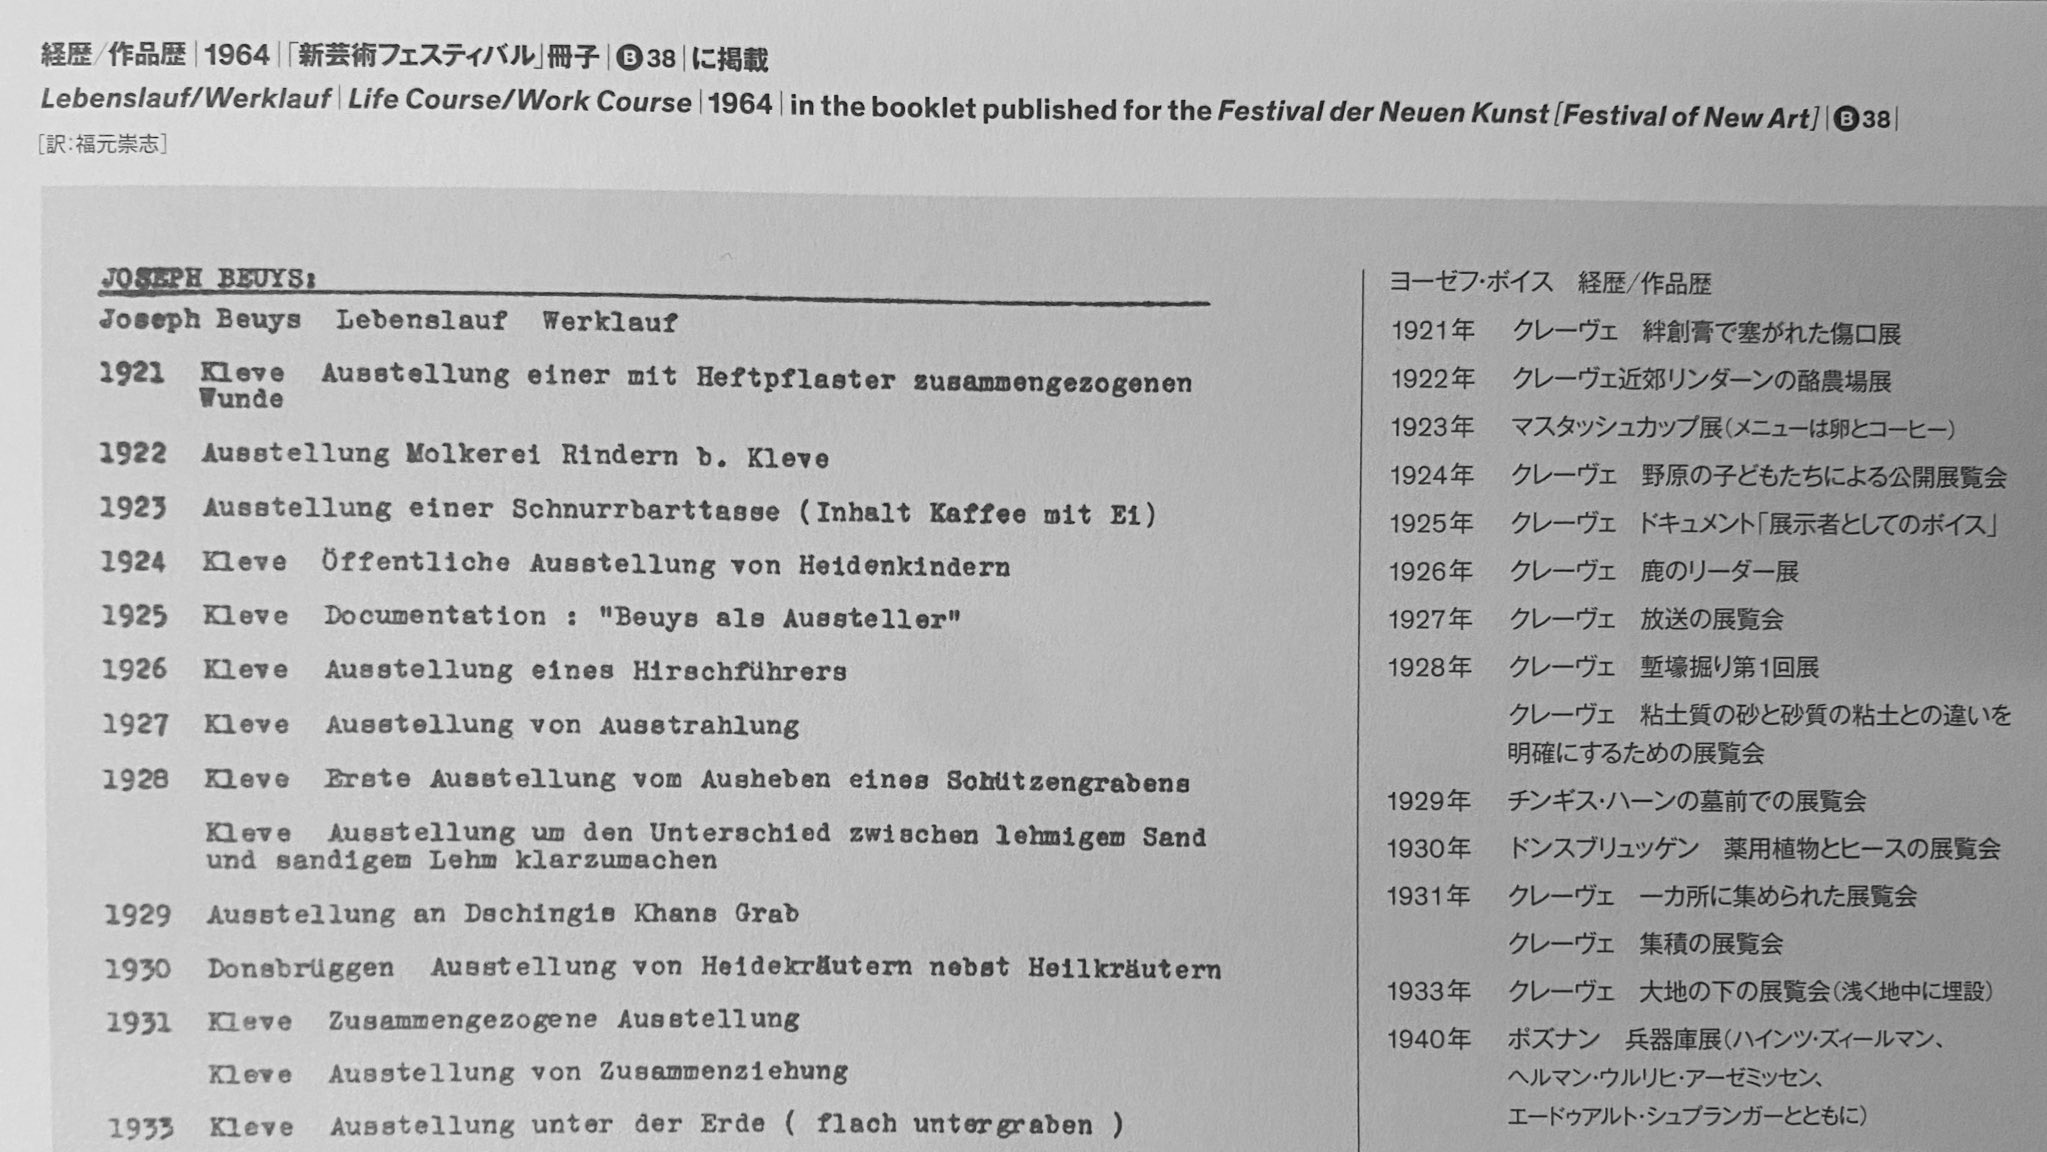 豊田市美術館 当館で開催中の展覧会のカタログに収めたボイスの年譜は のリーゲルの伝記を含めた最新の研究を反映した 日本語で読めるものとしては最新かつ最も詳しい内容です また 彼が改変し続けた 経歴 作品歴 も1964年版の日本語訳を掲載して